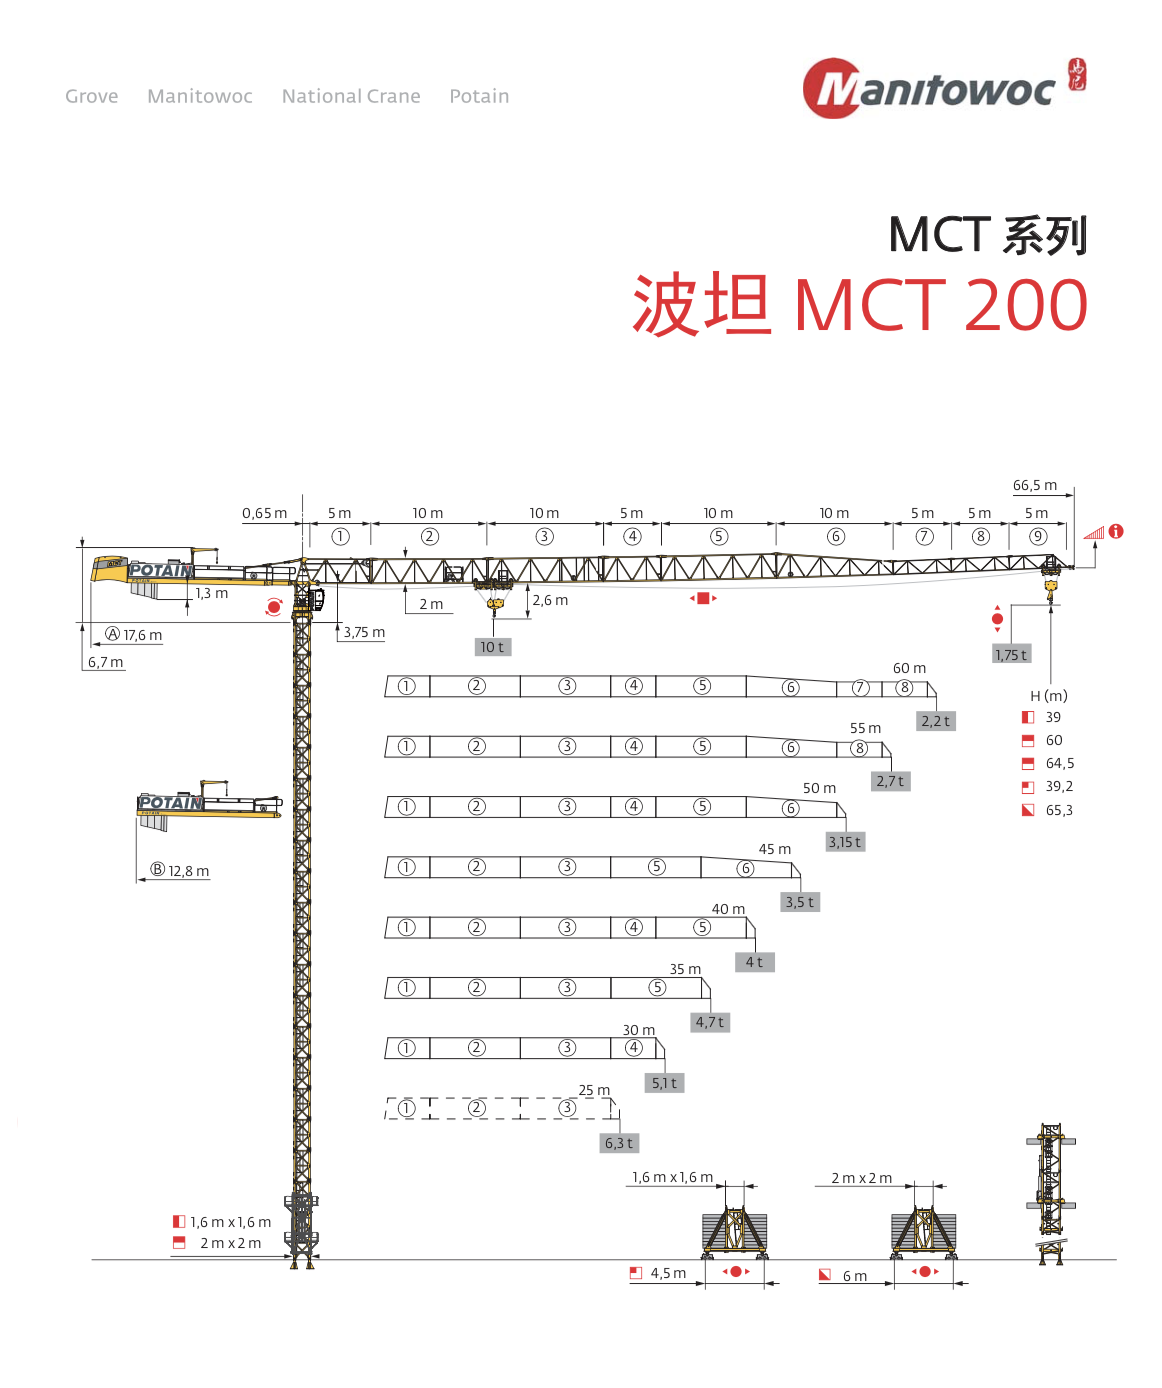 TOPLESS TOWER CRANE MCT200-10T 66.5M JIB 2